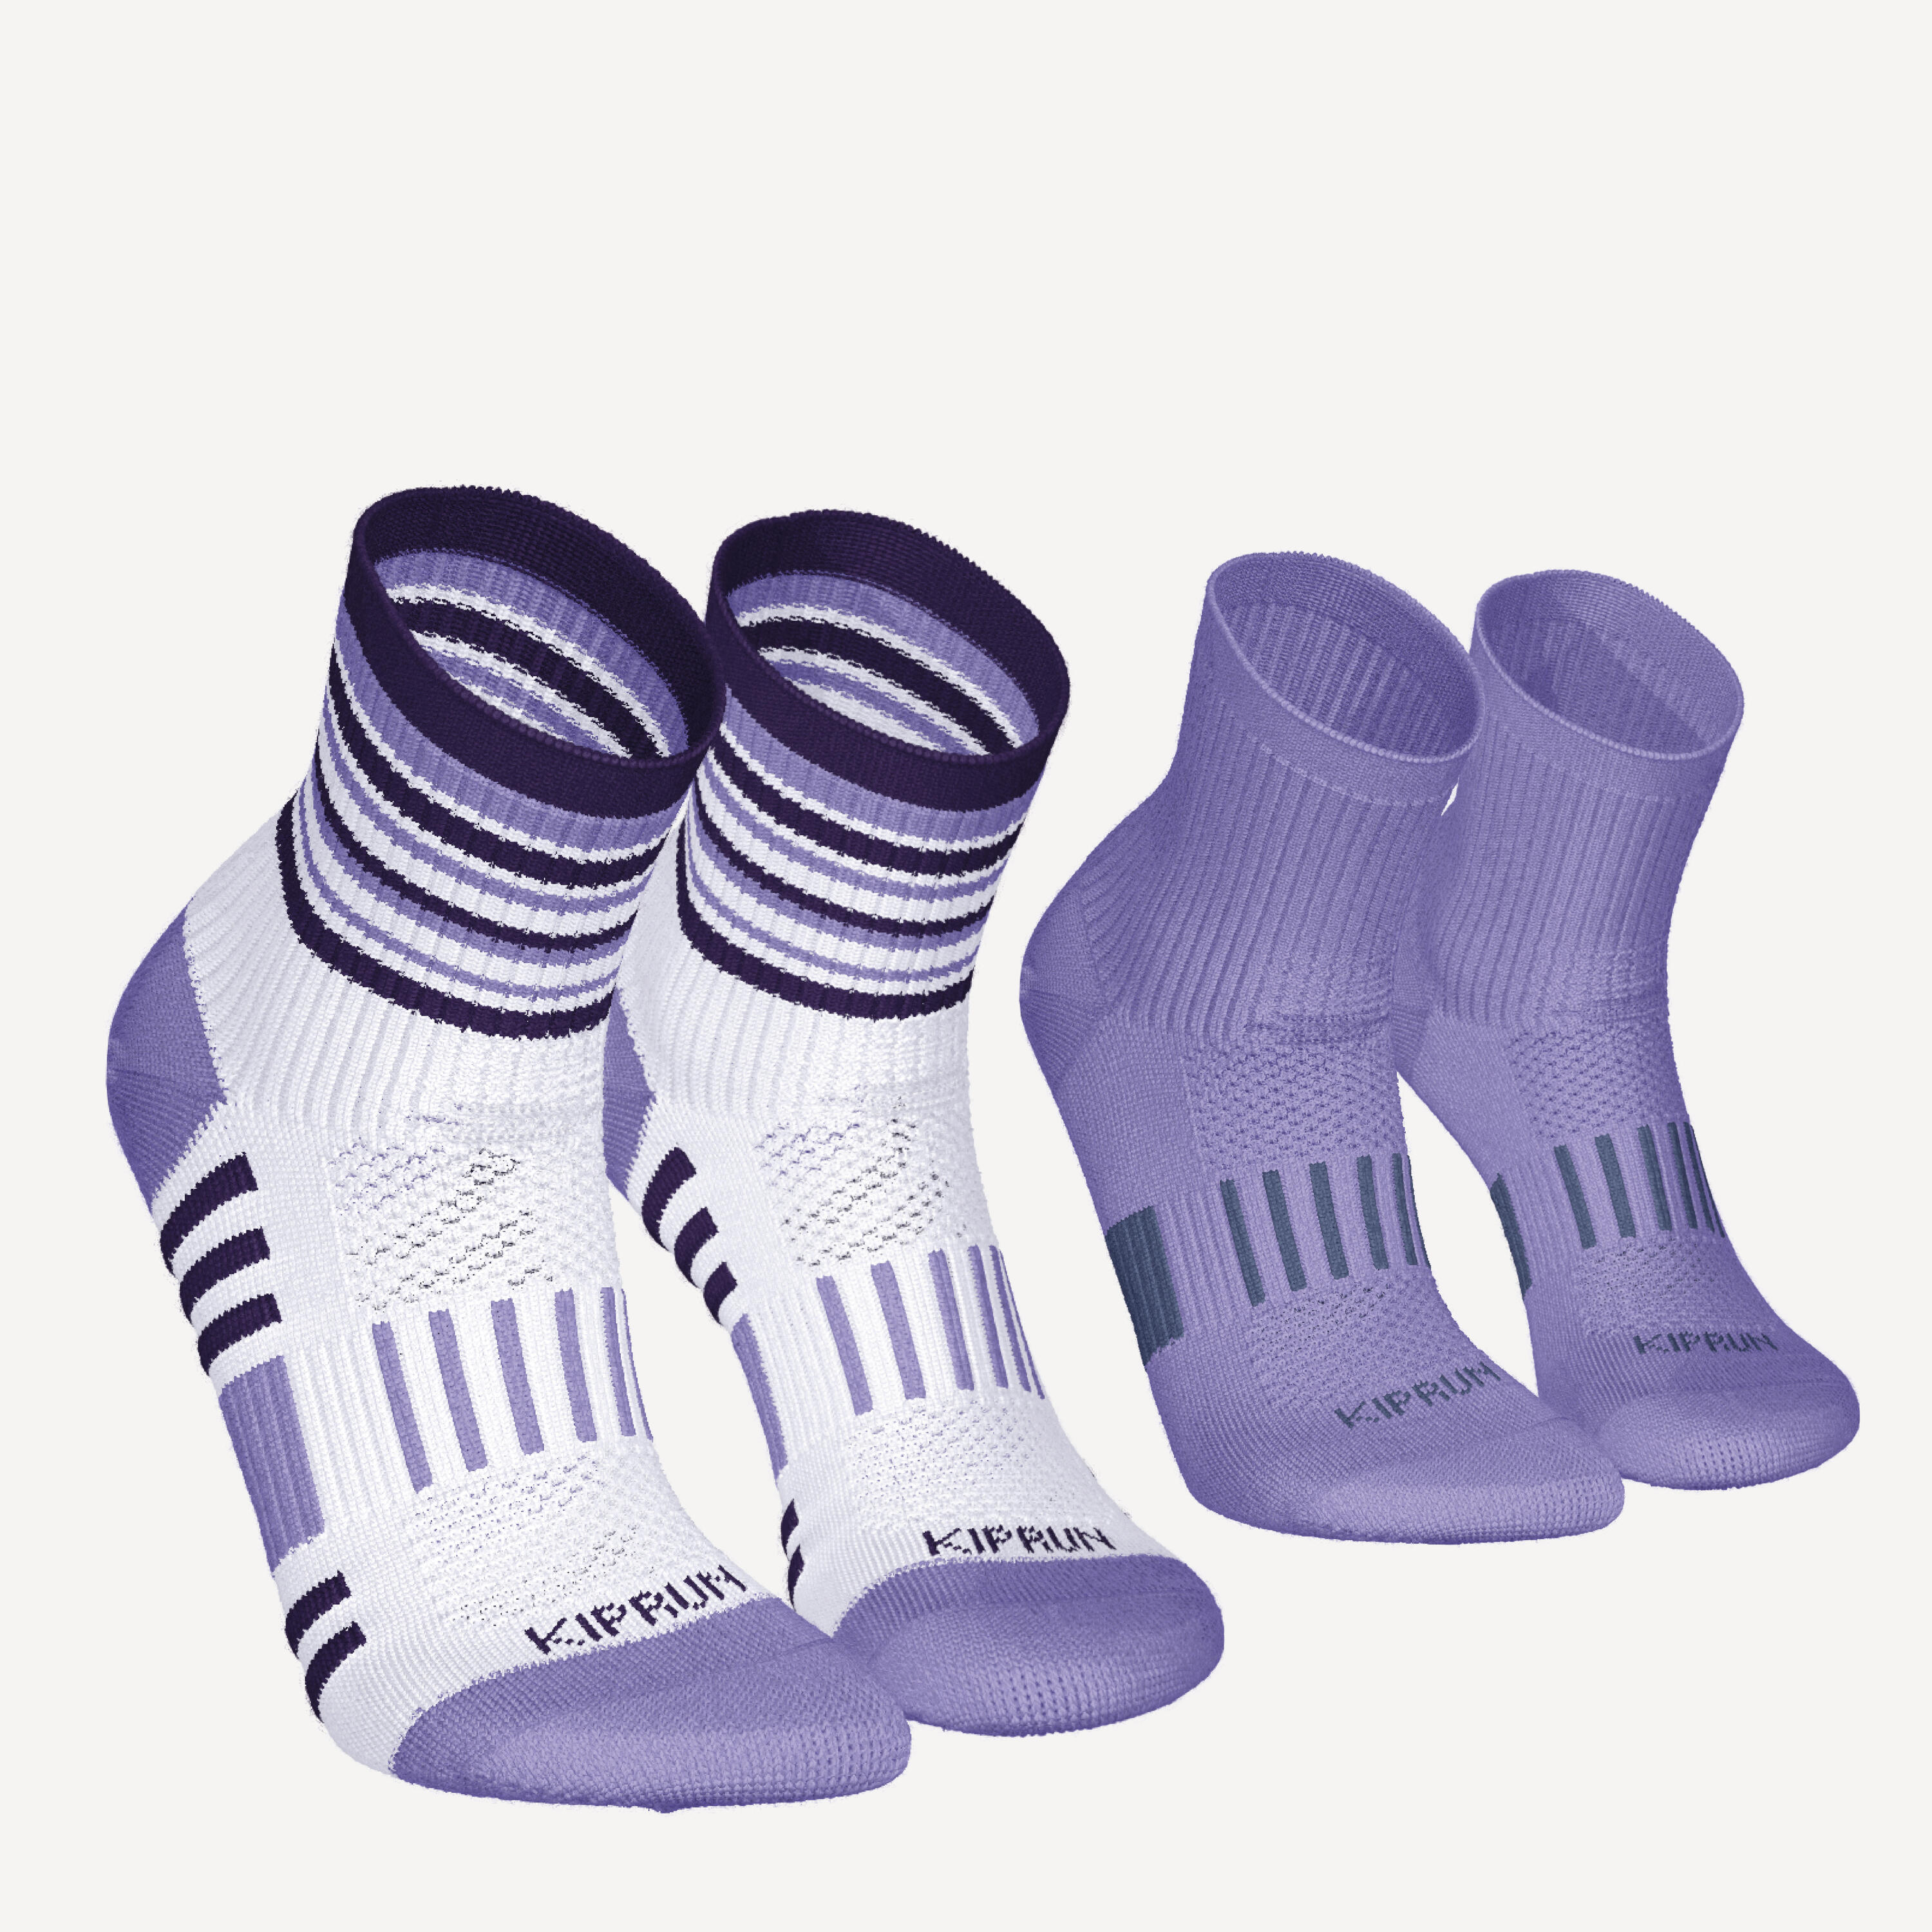 ultra white / lavender purple / fig purple